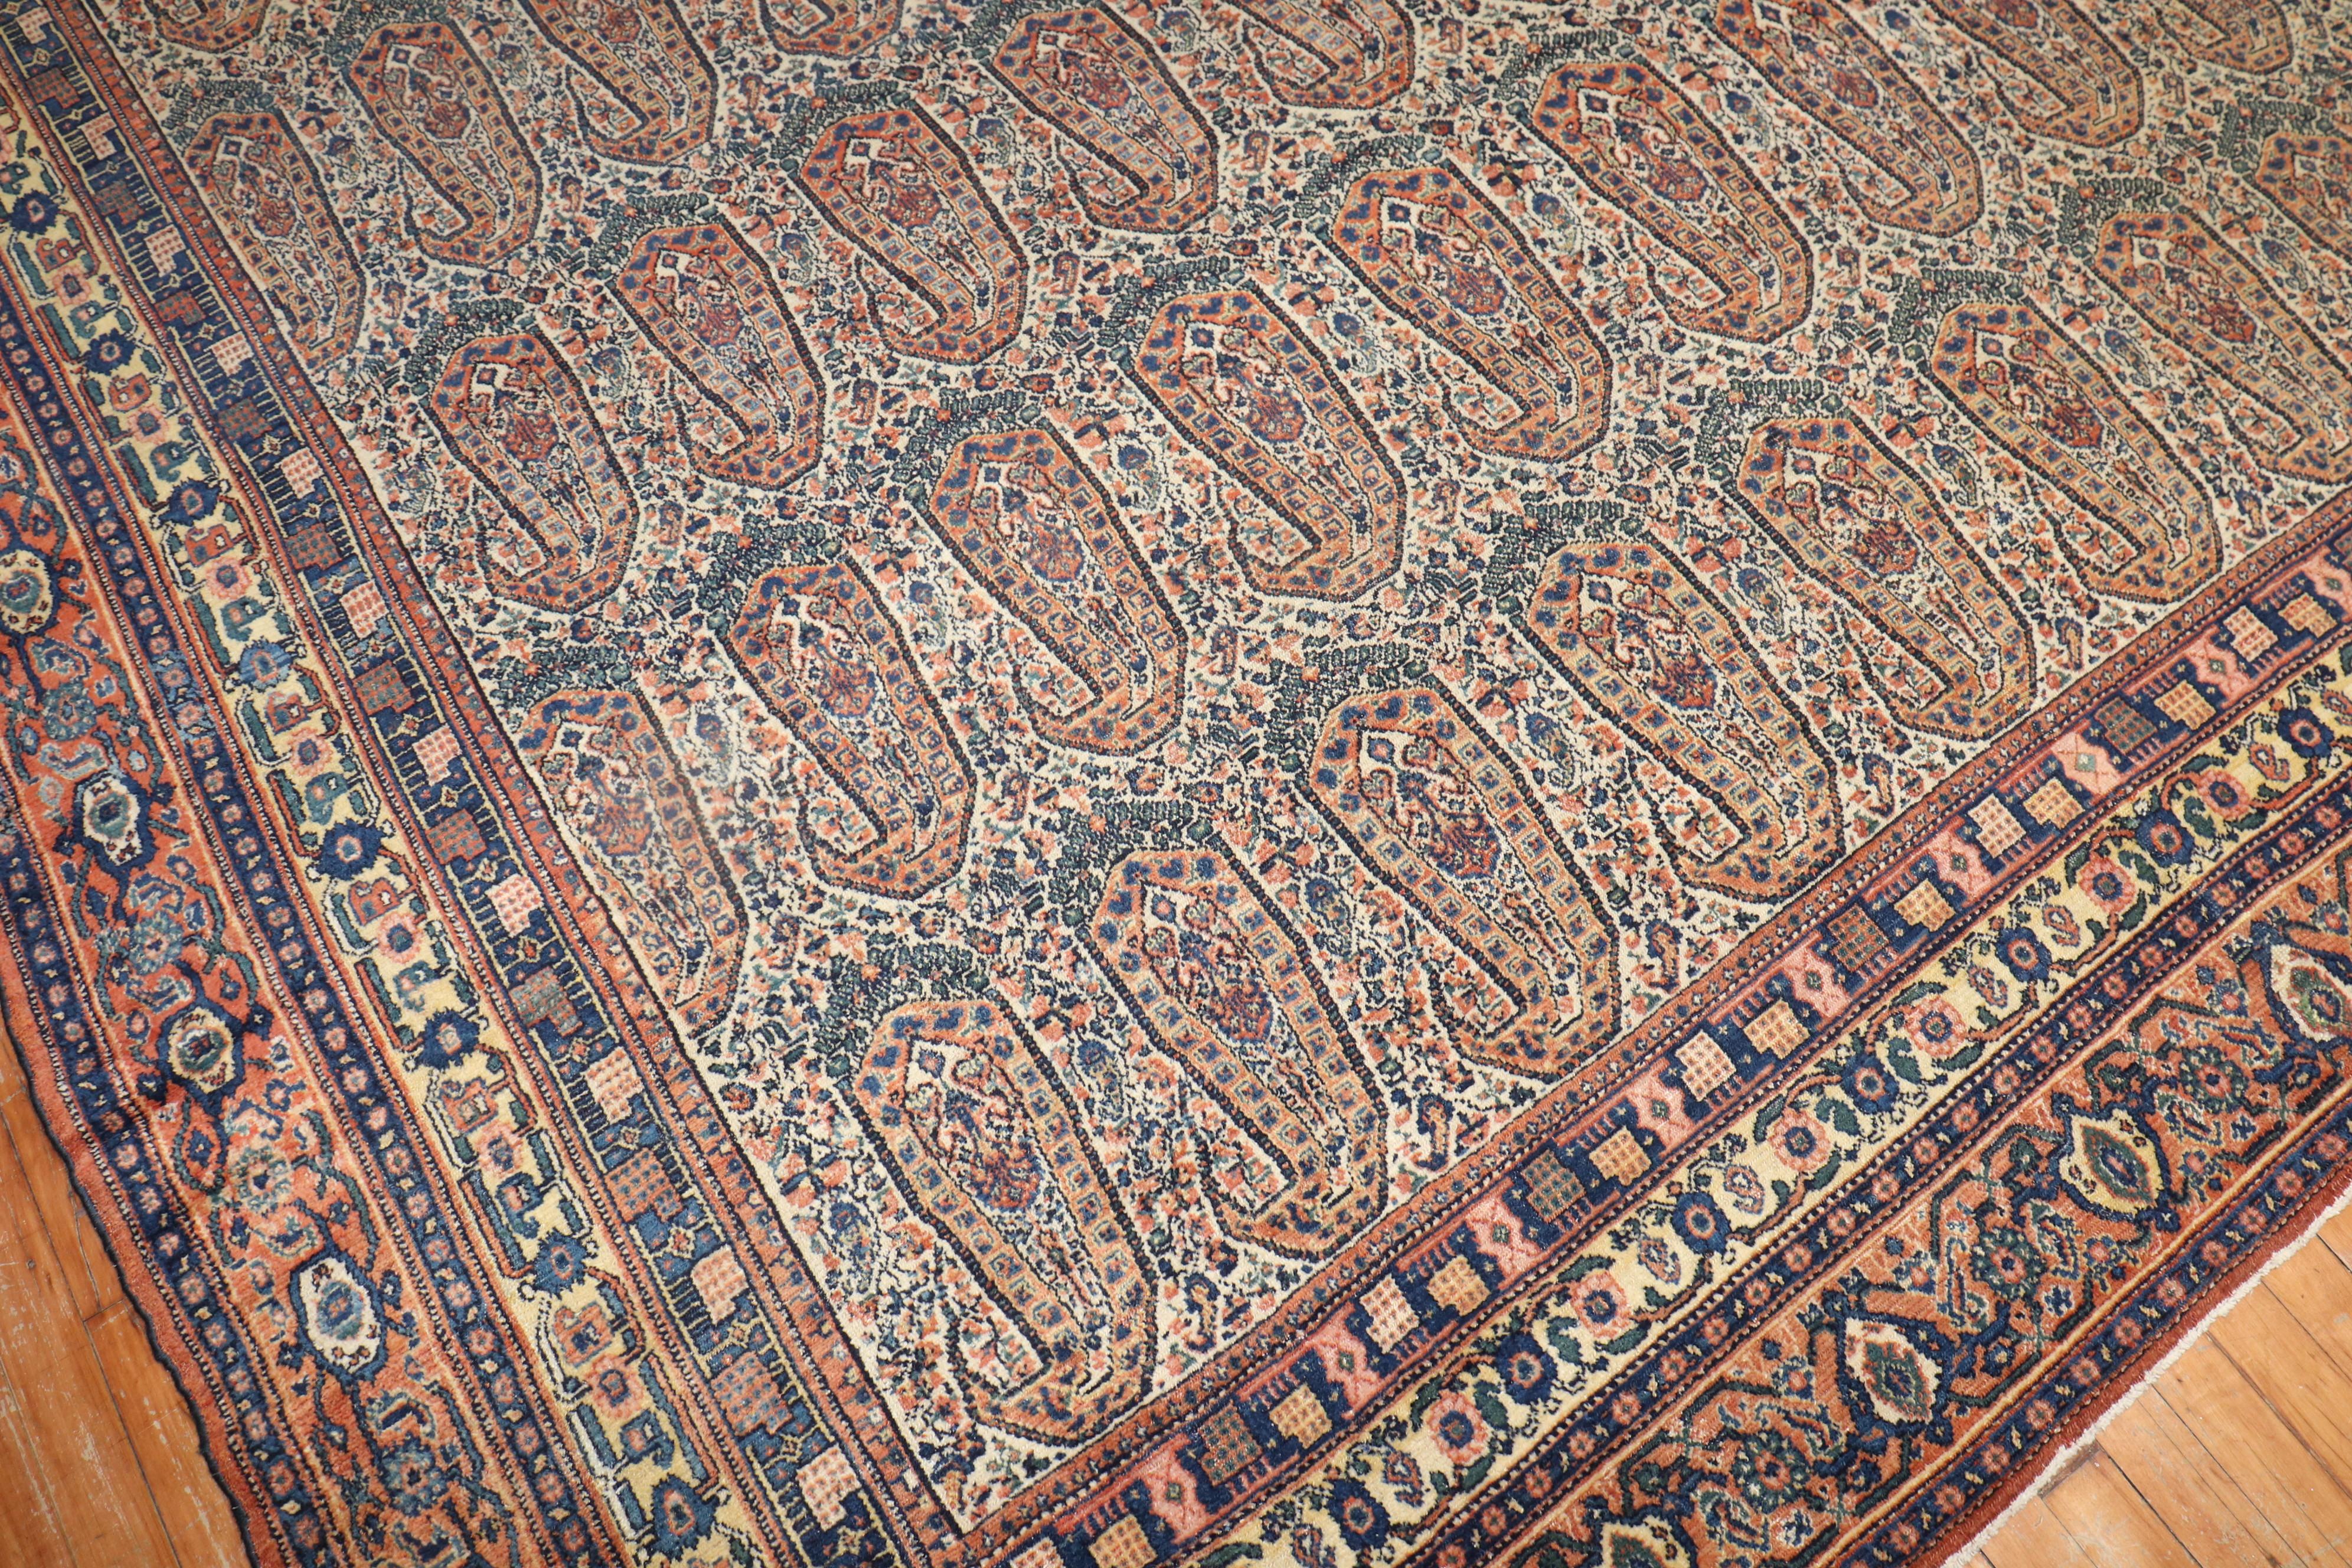 Spectaculaire tapis Senneh de la fin du 19ème siècle, de qualité supérieure et finement tissé, présentant un motif cachemire à grande échelle. 

Mesures : 9'3'' x 16'9''

Les tapis Senneh anciens sont l'un des plus distinctifs de tous les tapis